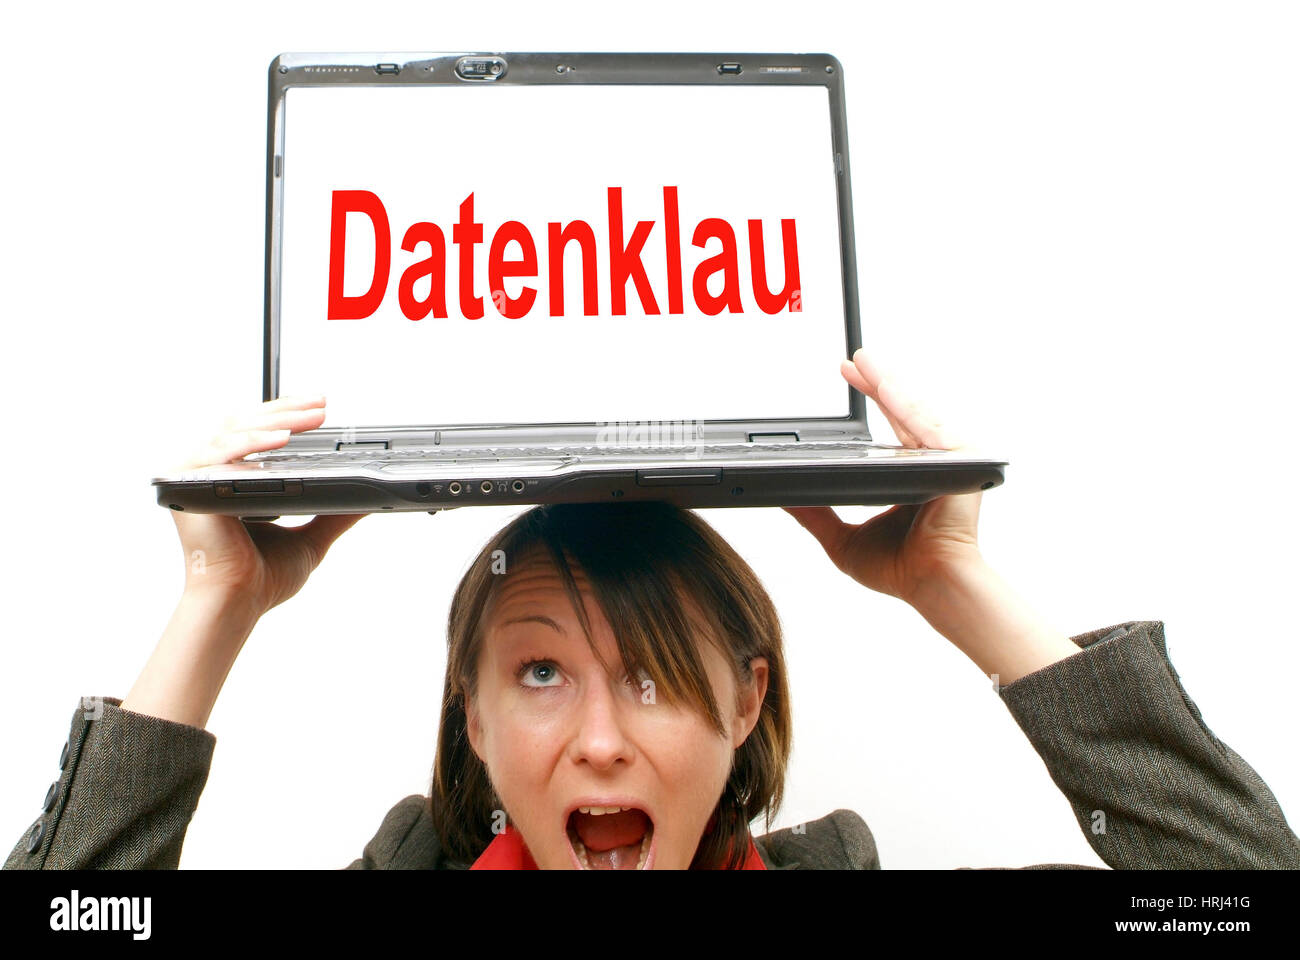 Gesch?ftsfrau mit Laptop am Kopf, Symbolbild Datenklau - donna d'affari con computer portatile sulla testa, simbolico per rubare dati Foto Stock